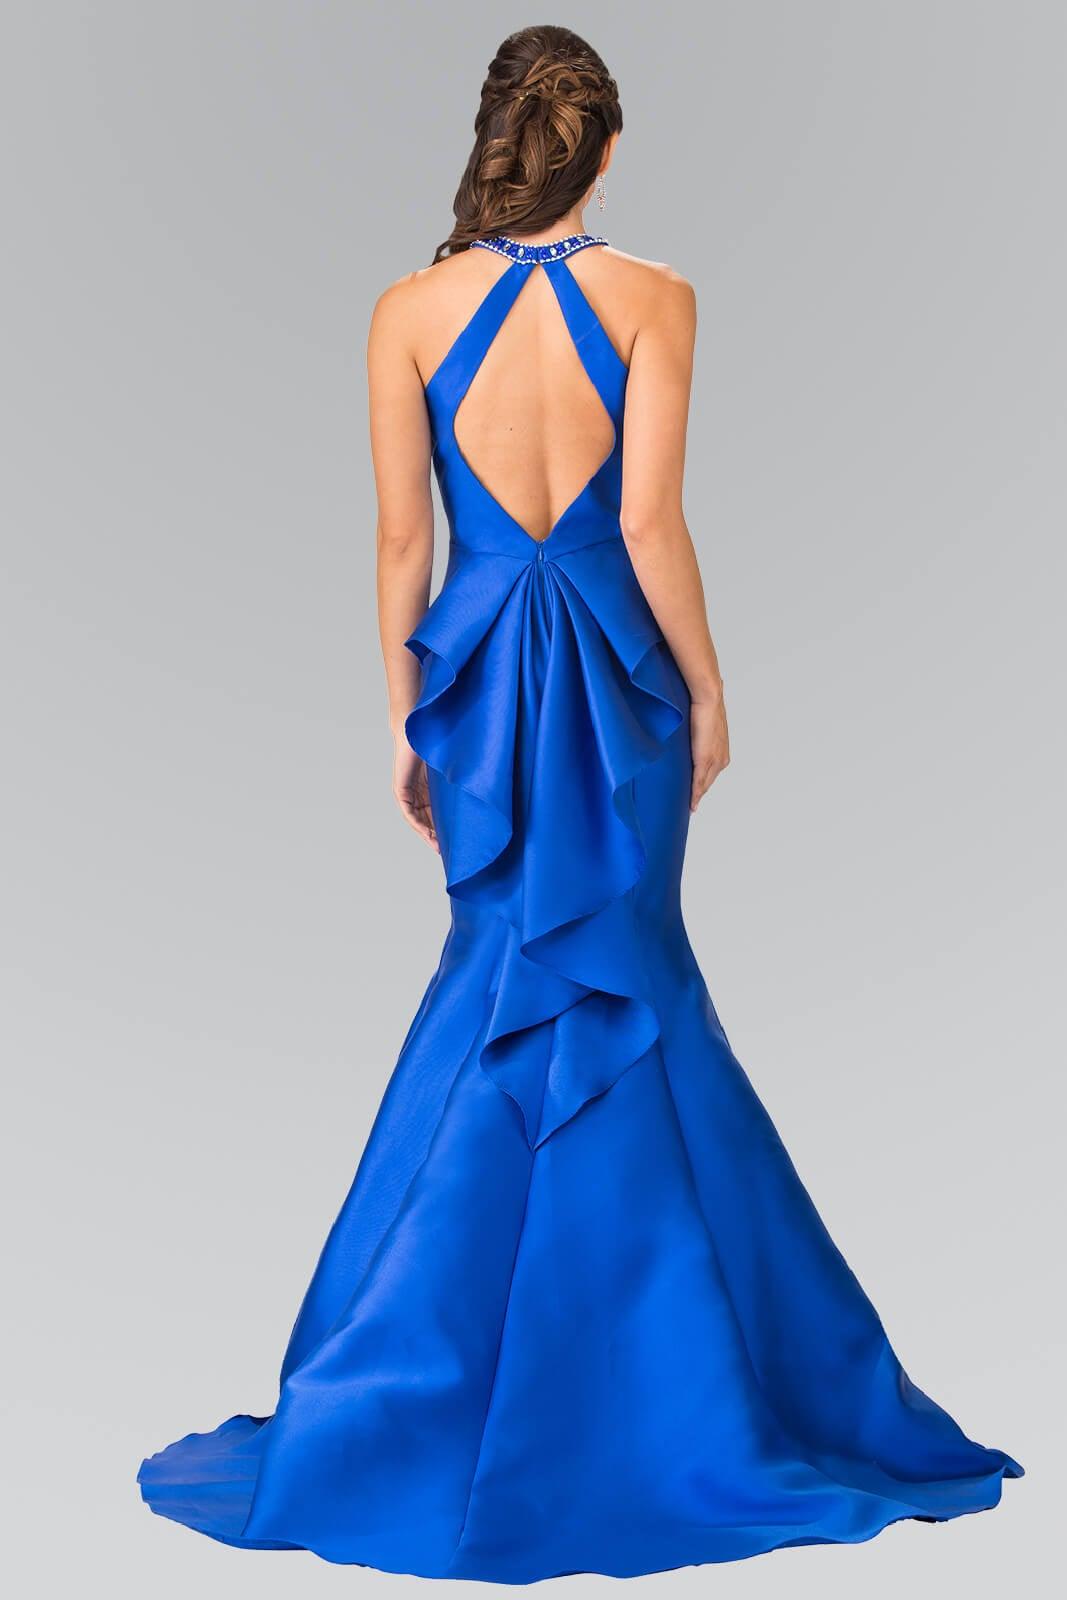 Mermaid Prom Halter Dress Evening Gown Formal - The Dress Outlet Elizabeth K